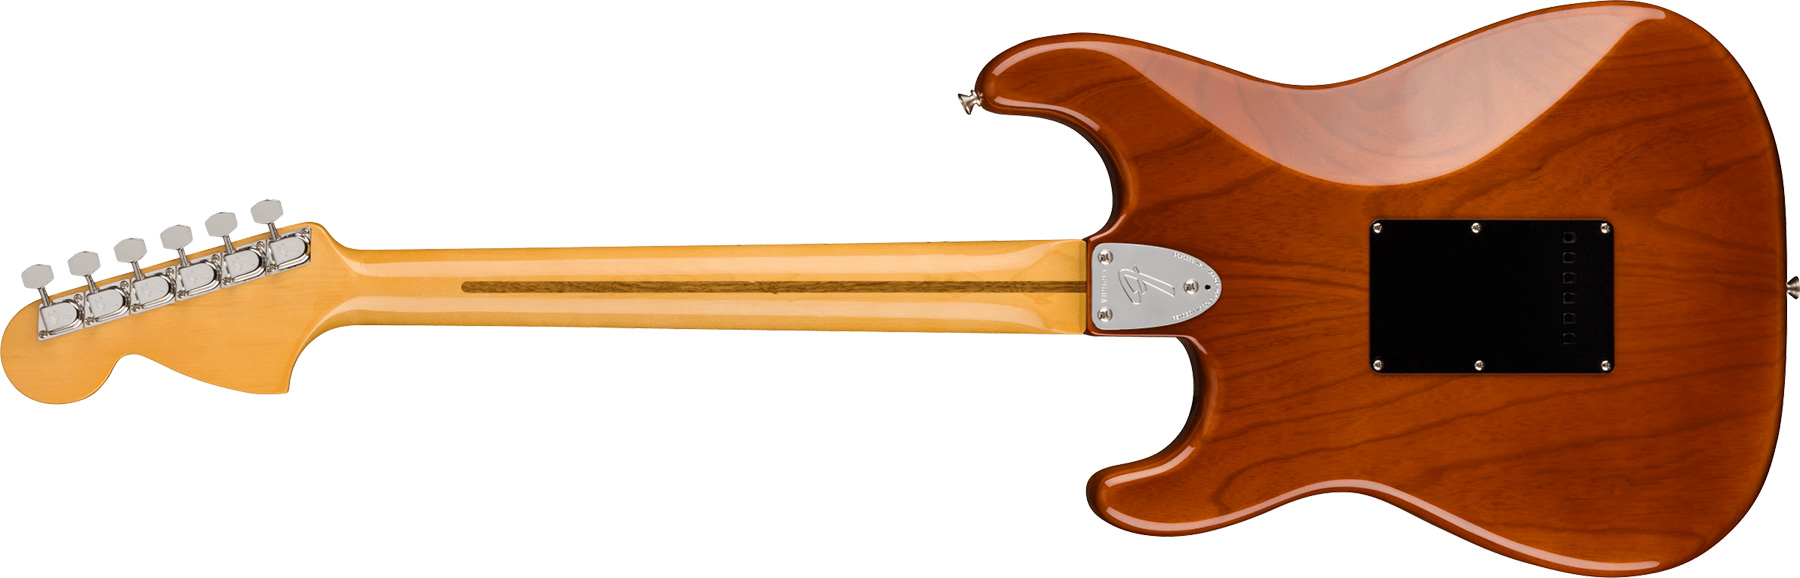 Fender Strat 1973 American Vintage Ii Usa 3s Trem Mn - Mocha - Str shape electric guitar - Variation 1